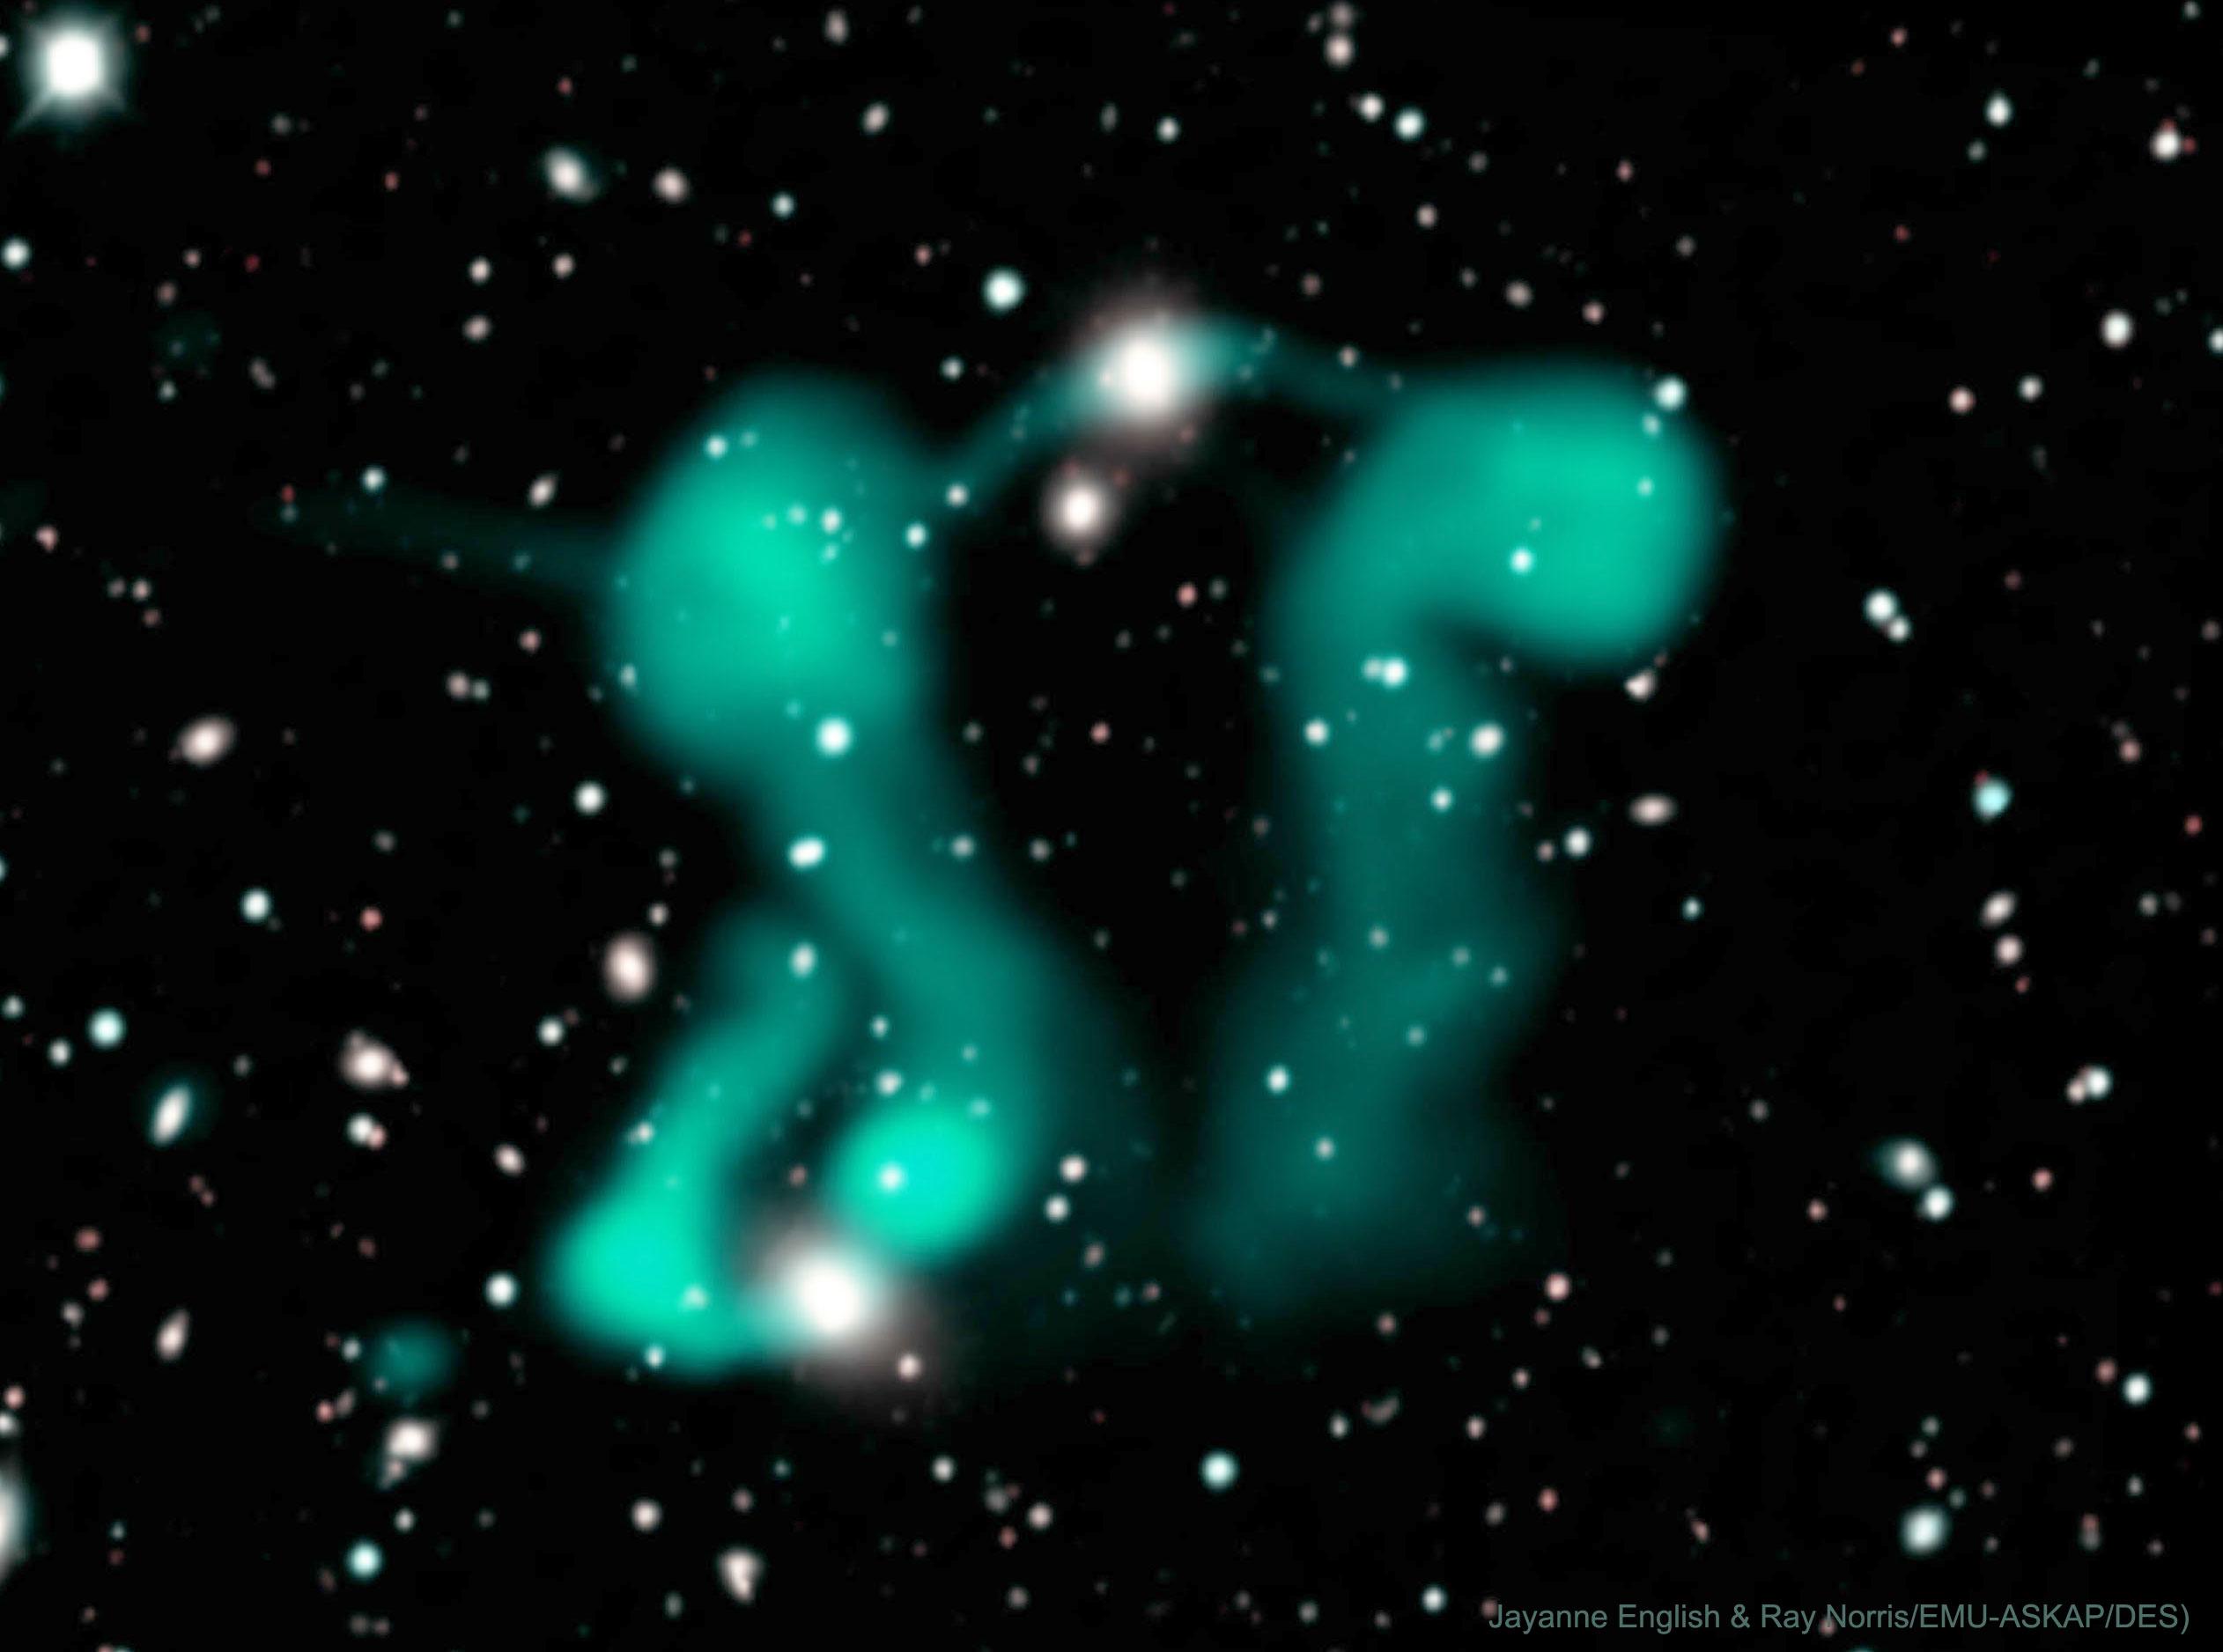 تُظهر الصورة التدفّقات الراديوية المنبعثة من مجرّات بعيدة نشطة. تتكون التدفّقات من الكترونات وتبدو كأشباح راقصة.